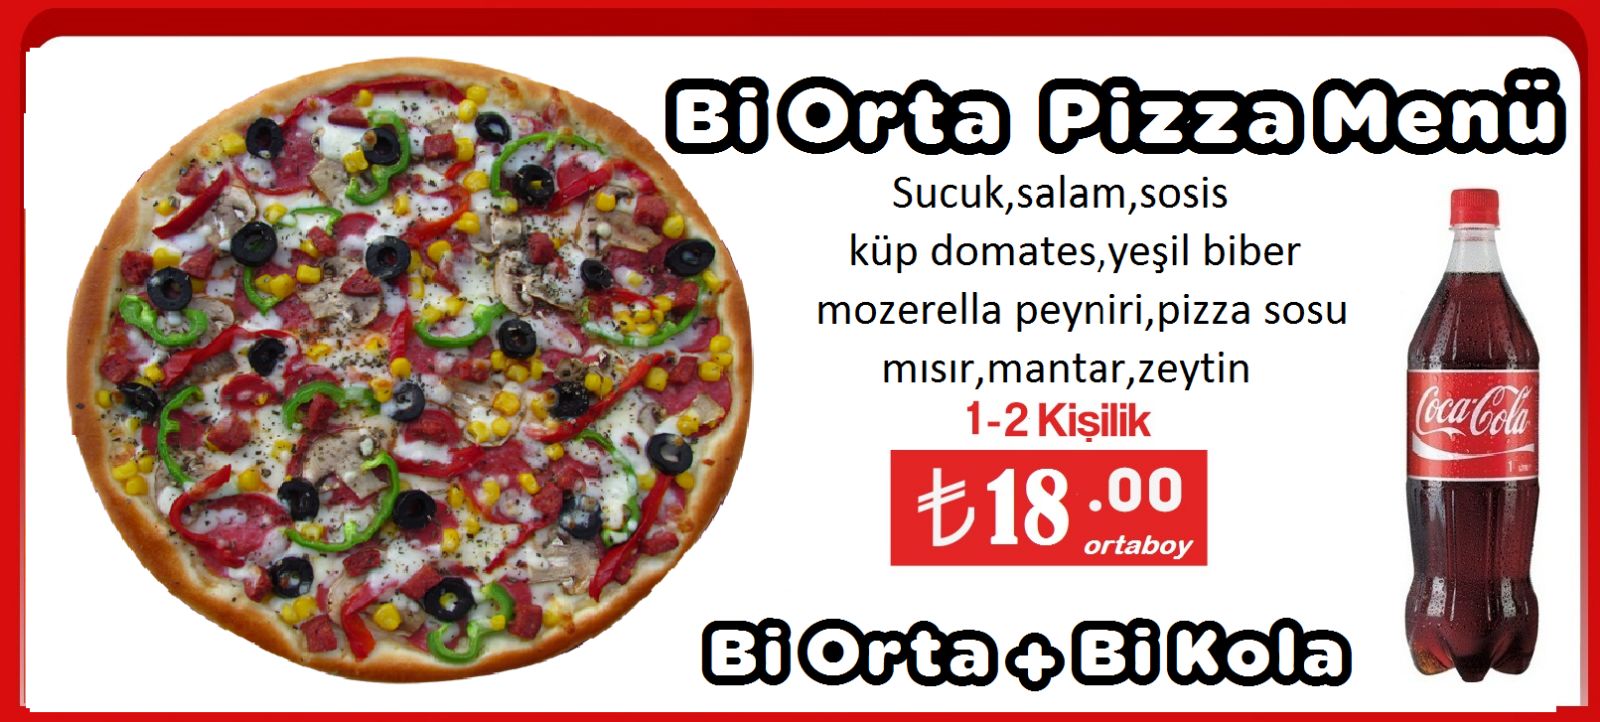 Quick Pizza Gerede şubesi hizmete açıldı GEREDE MEDYA TAKİP Gerede